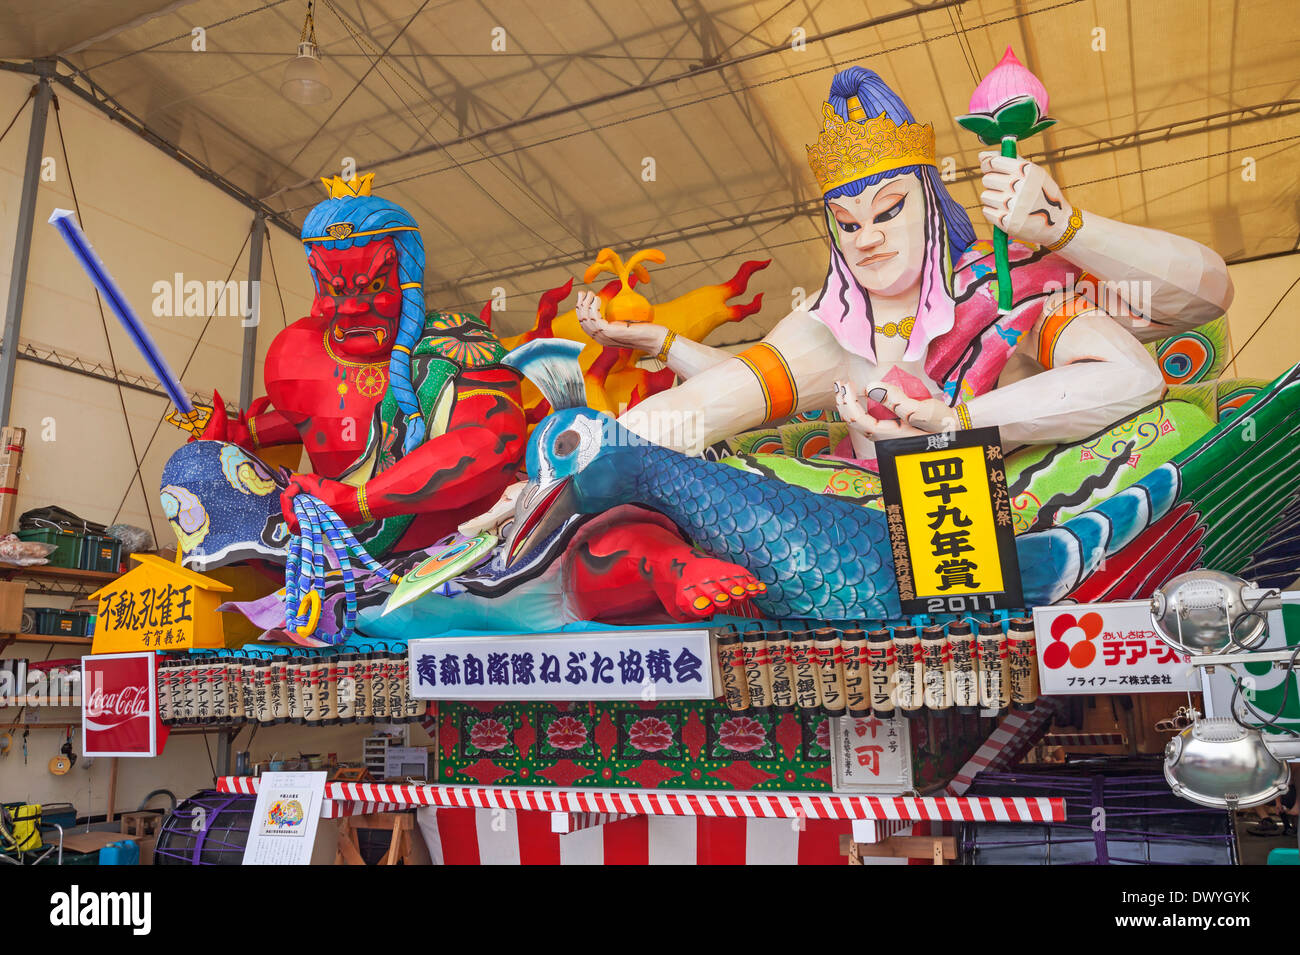 Aomori Nebuta Festival Float, Aomori, Aomori Prefecture, Japan Stock Photo